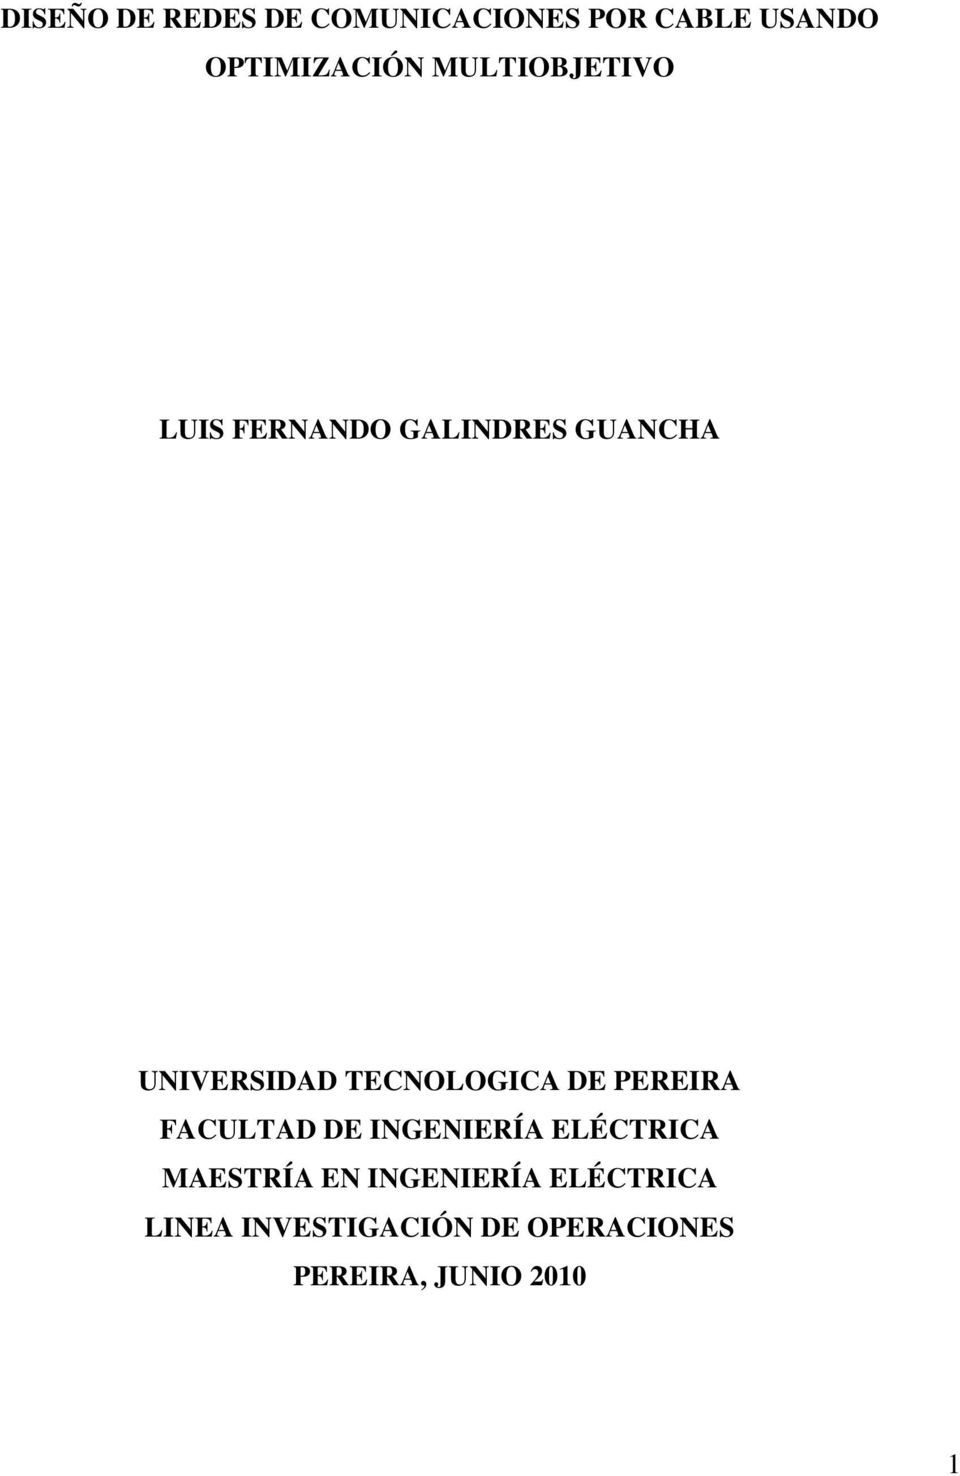 TECNOLOGICA DE PEREIRA FACULTAD DE INGENIERÍA ELÉCTRICA MAESTRÍA